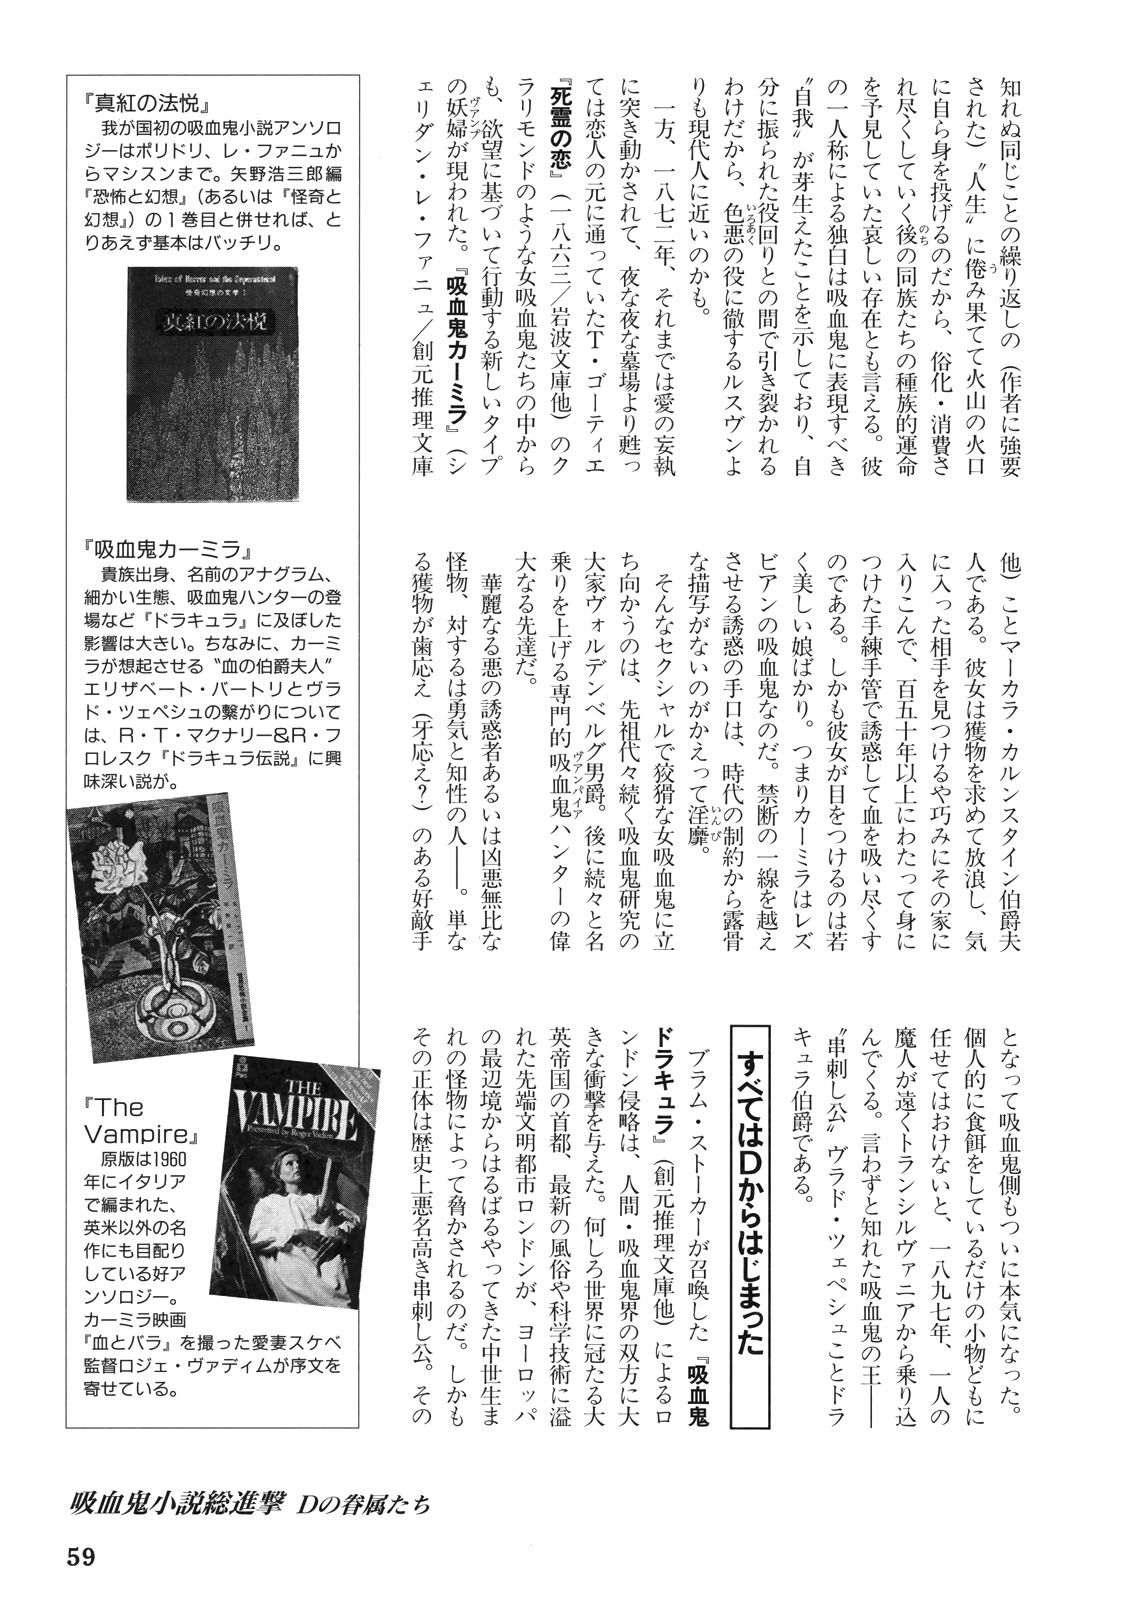 Vampire Hunter D Reader’s Guide 60